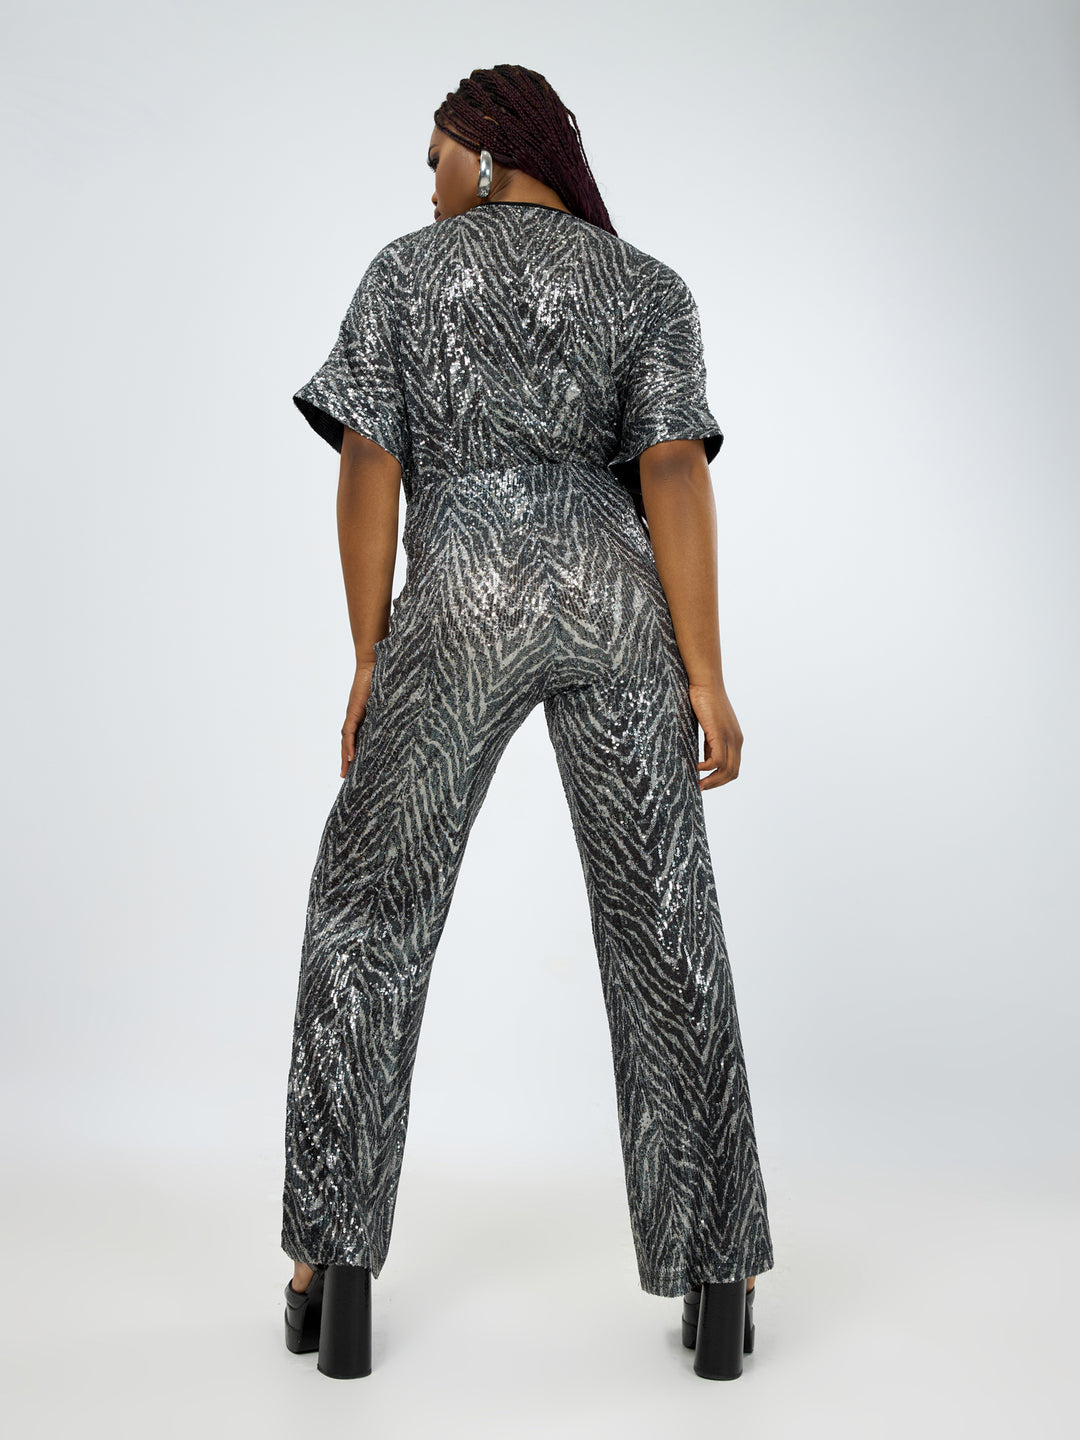 broek met pailletten - mat fashion - 8001.2076 - grote maten - dameskleding - kledingwinkel - herent - leuven